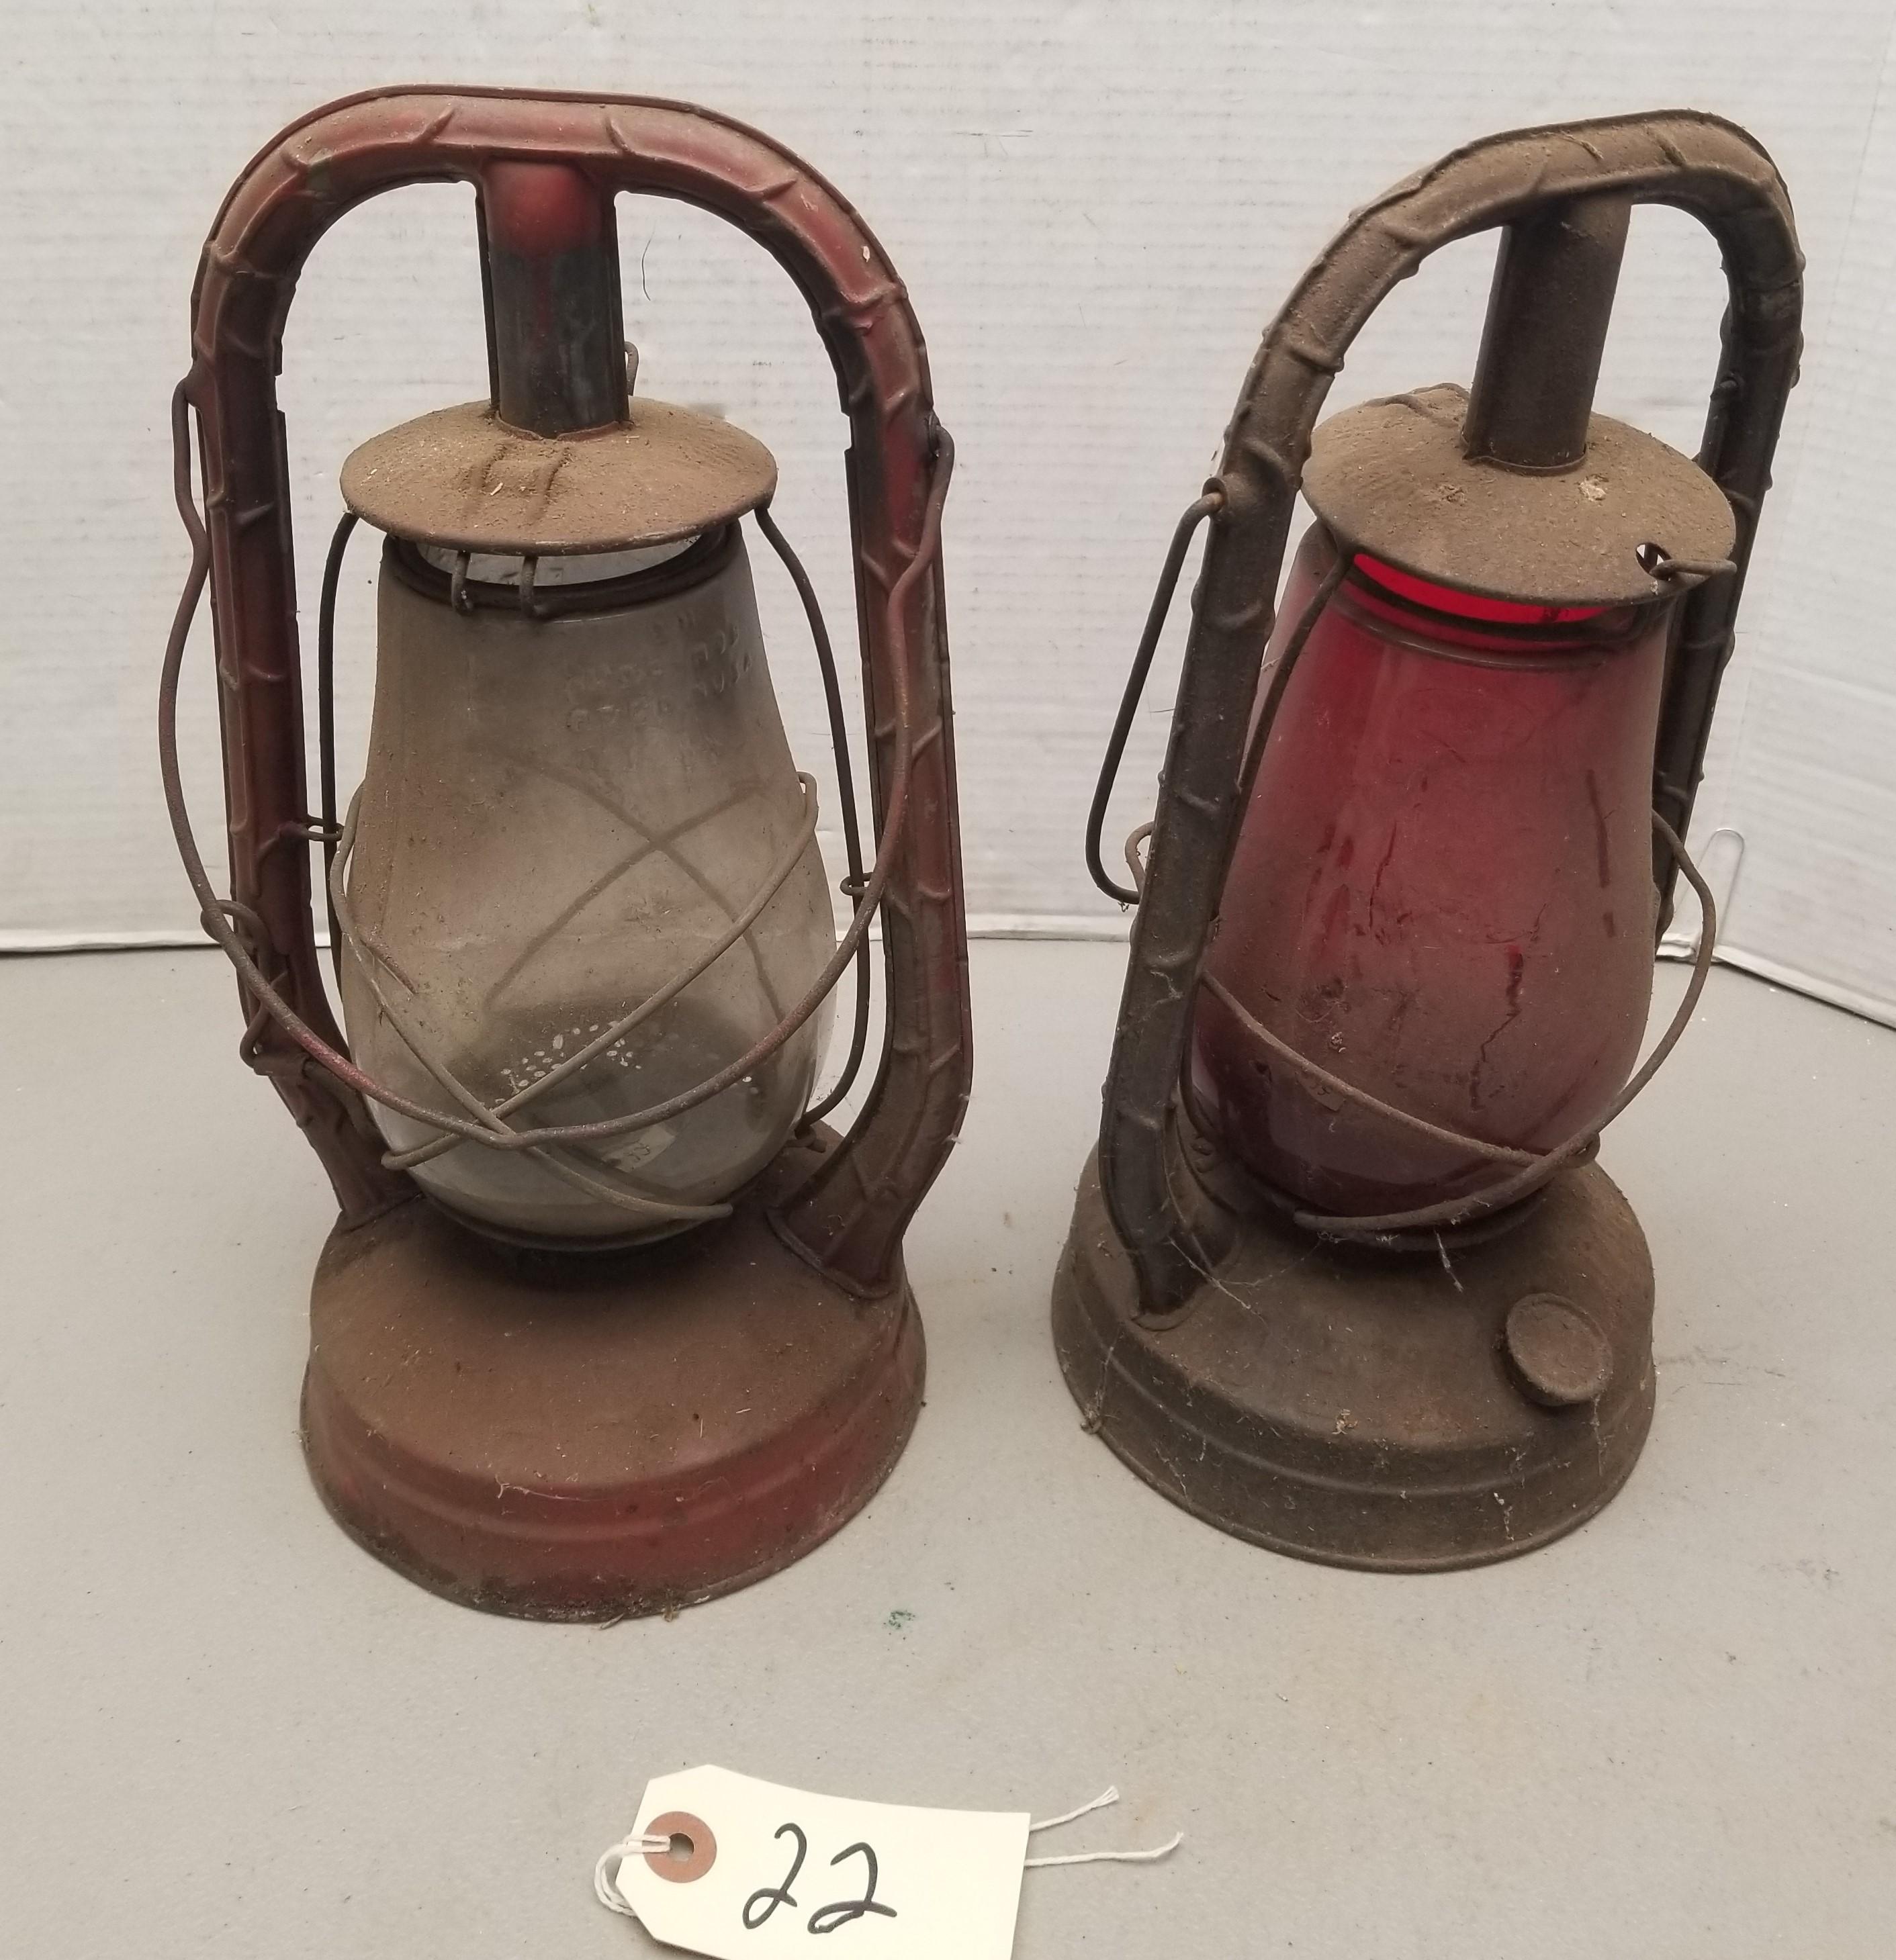 (2) Vintage Dietz Railroad Lanterns